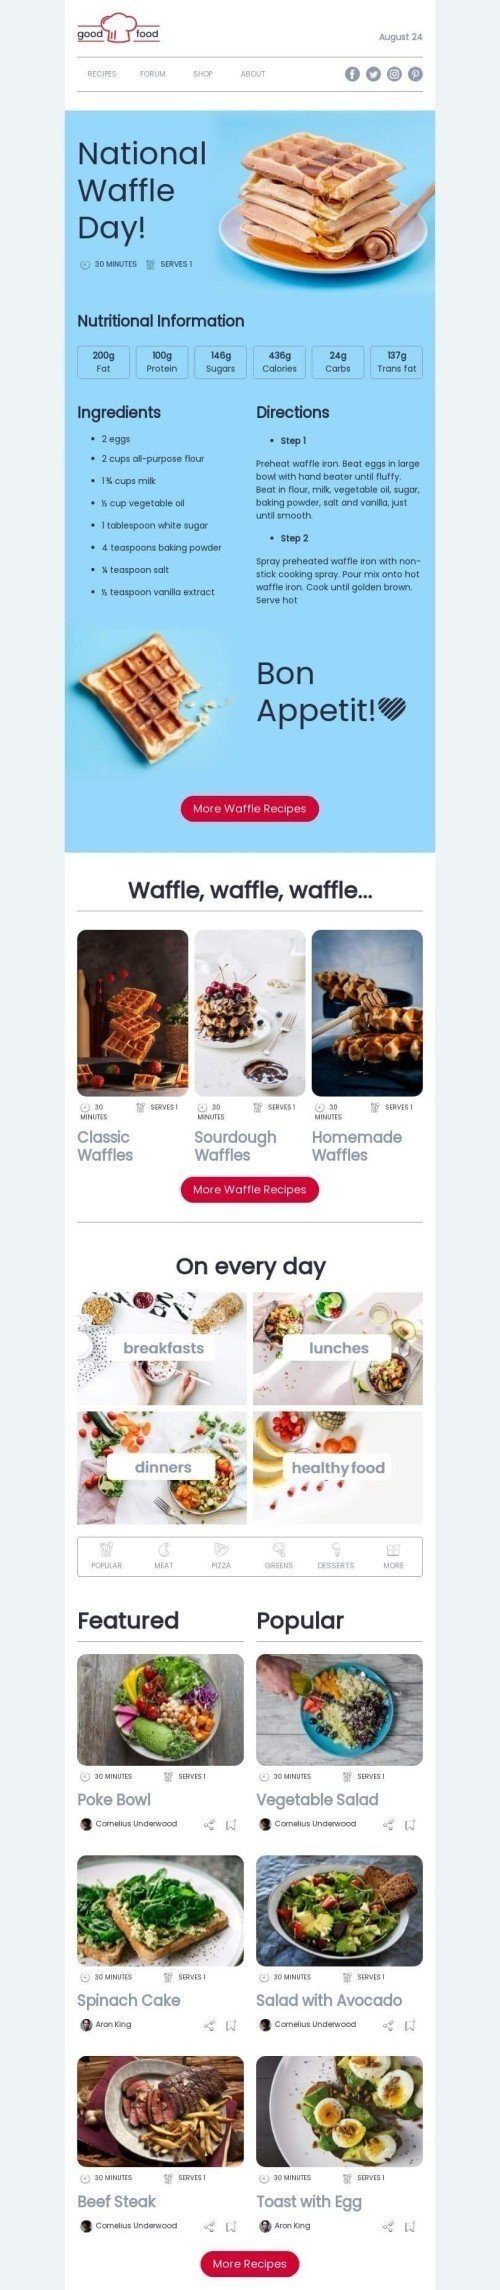 Modelo de E-mail de «Compartilhe sua receita de waffle» de Dia Nacional do Waffle para a indústria de Alimentação Visualização de desktop